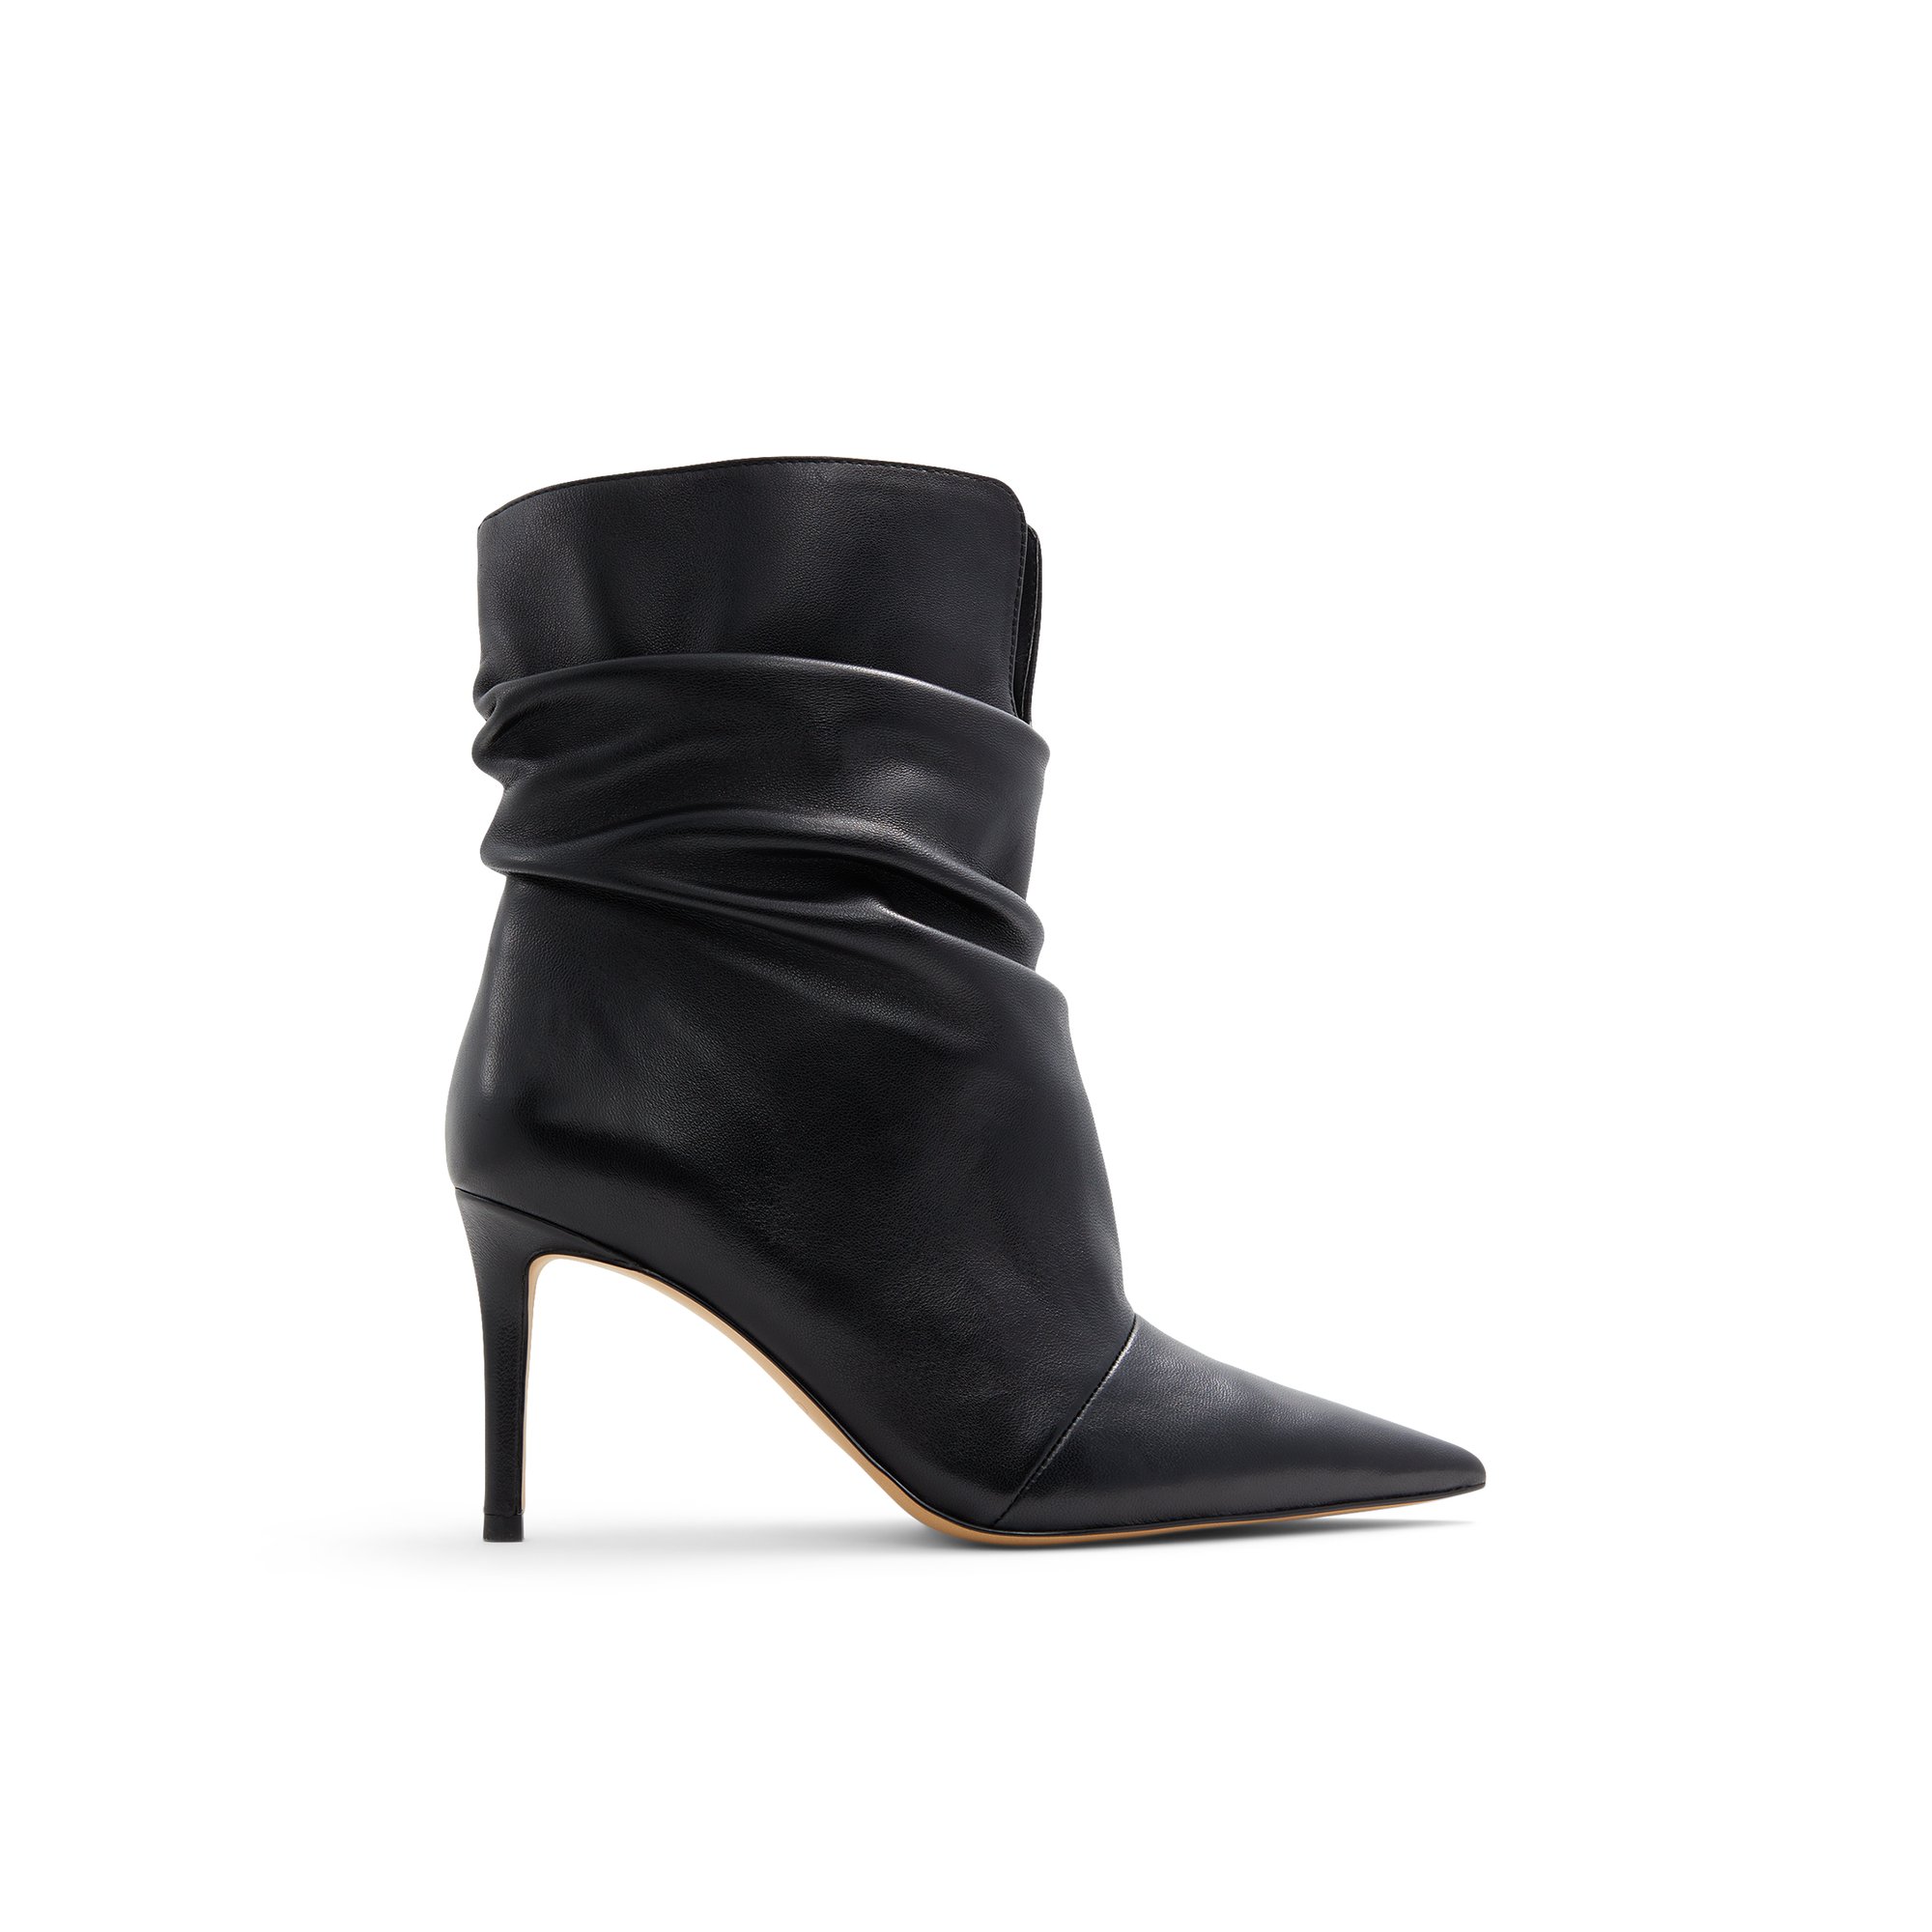 ALDO Elfie - Women's Boots Dress - Black